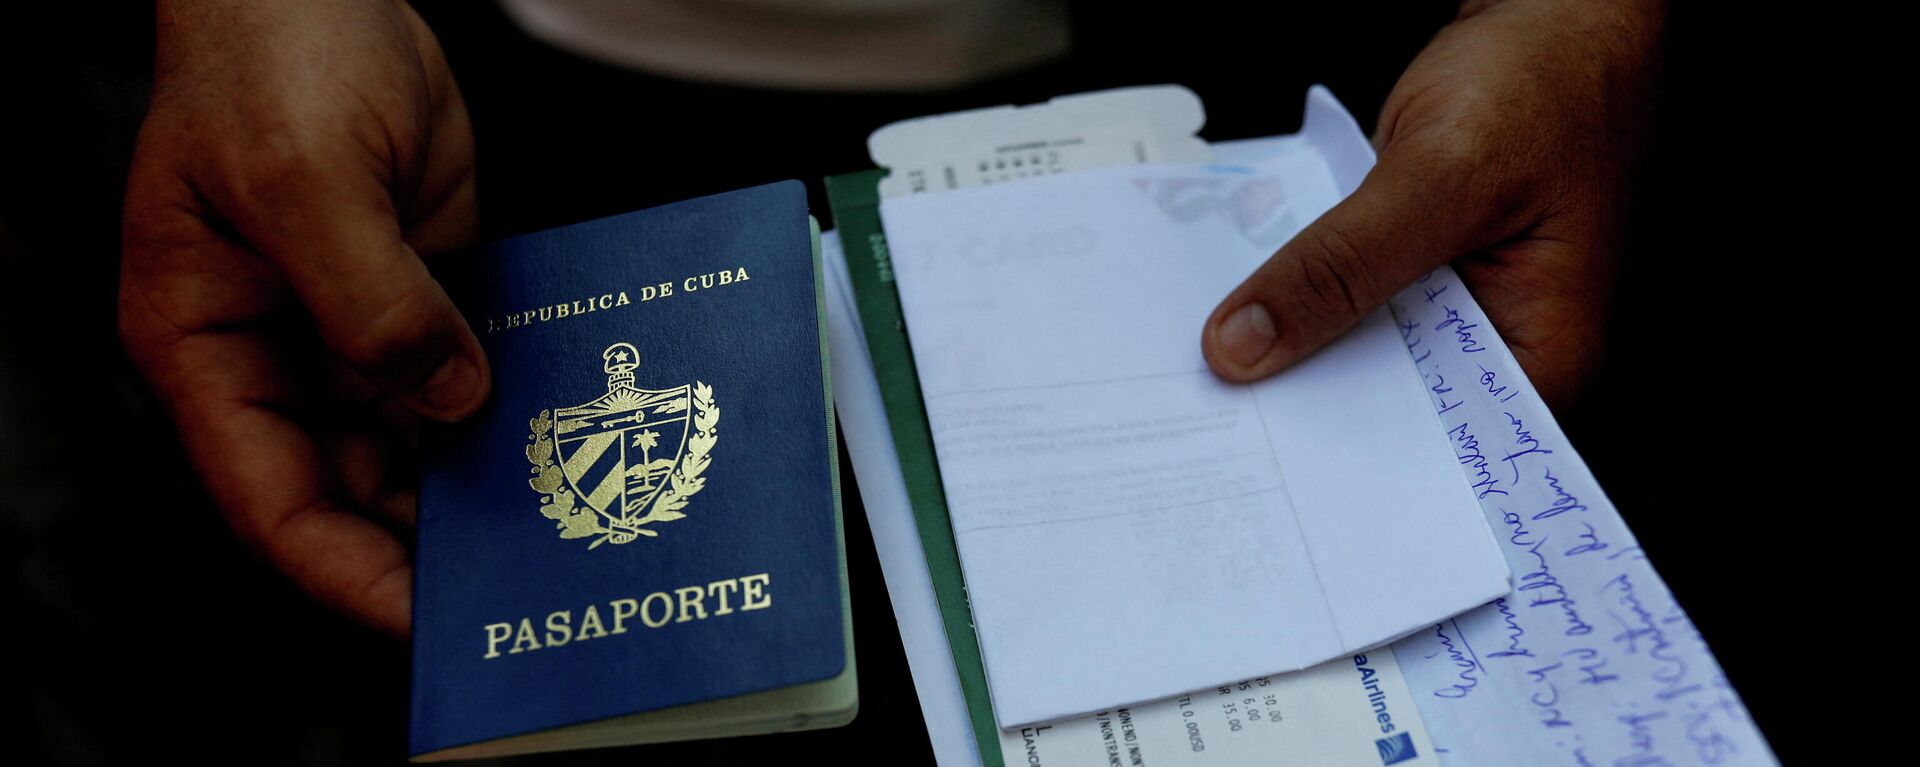 El pasaporte de Cuba y documentos de viaje - Sputnik Mundo, 1920, 09.03.2022